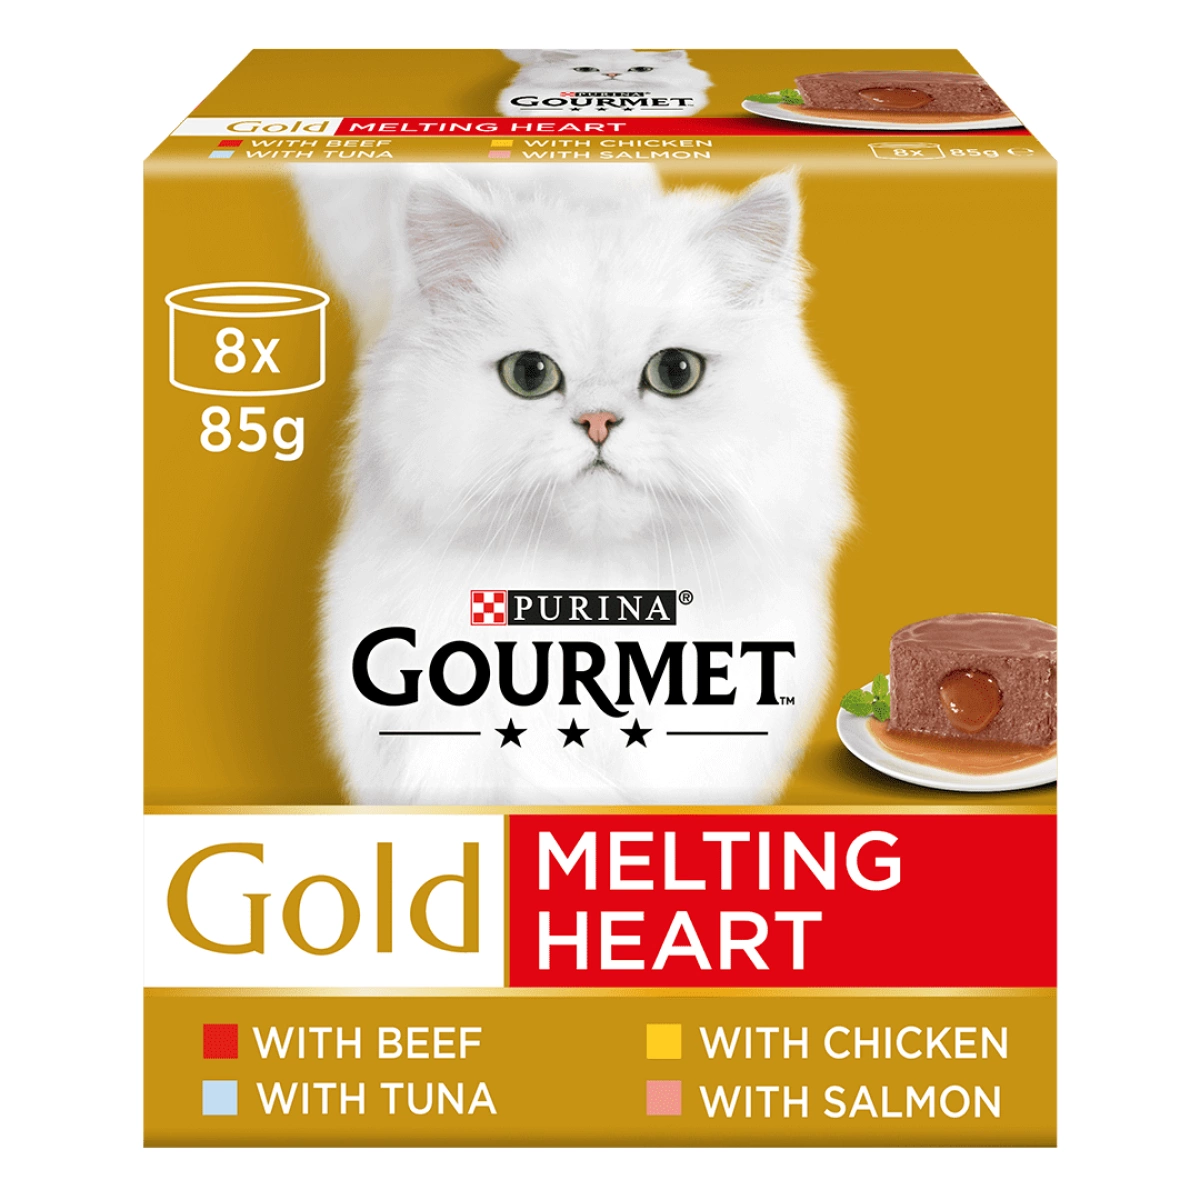 Gourmet Gold - Melting Hearts 8 x 85g Main Image